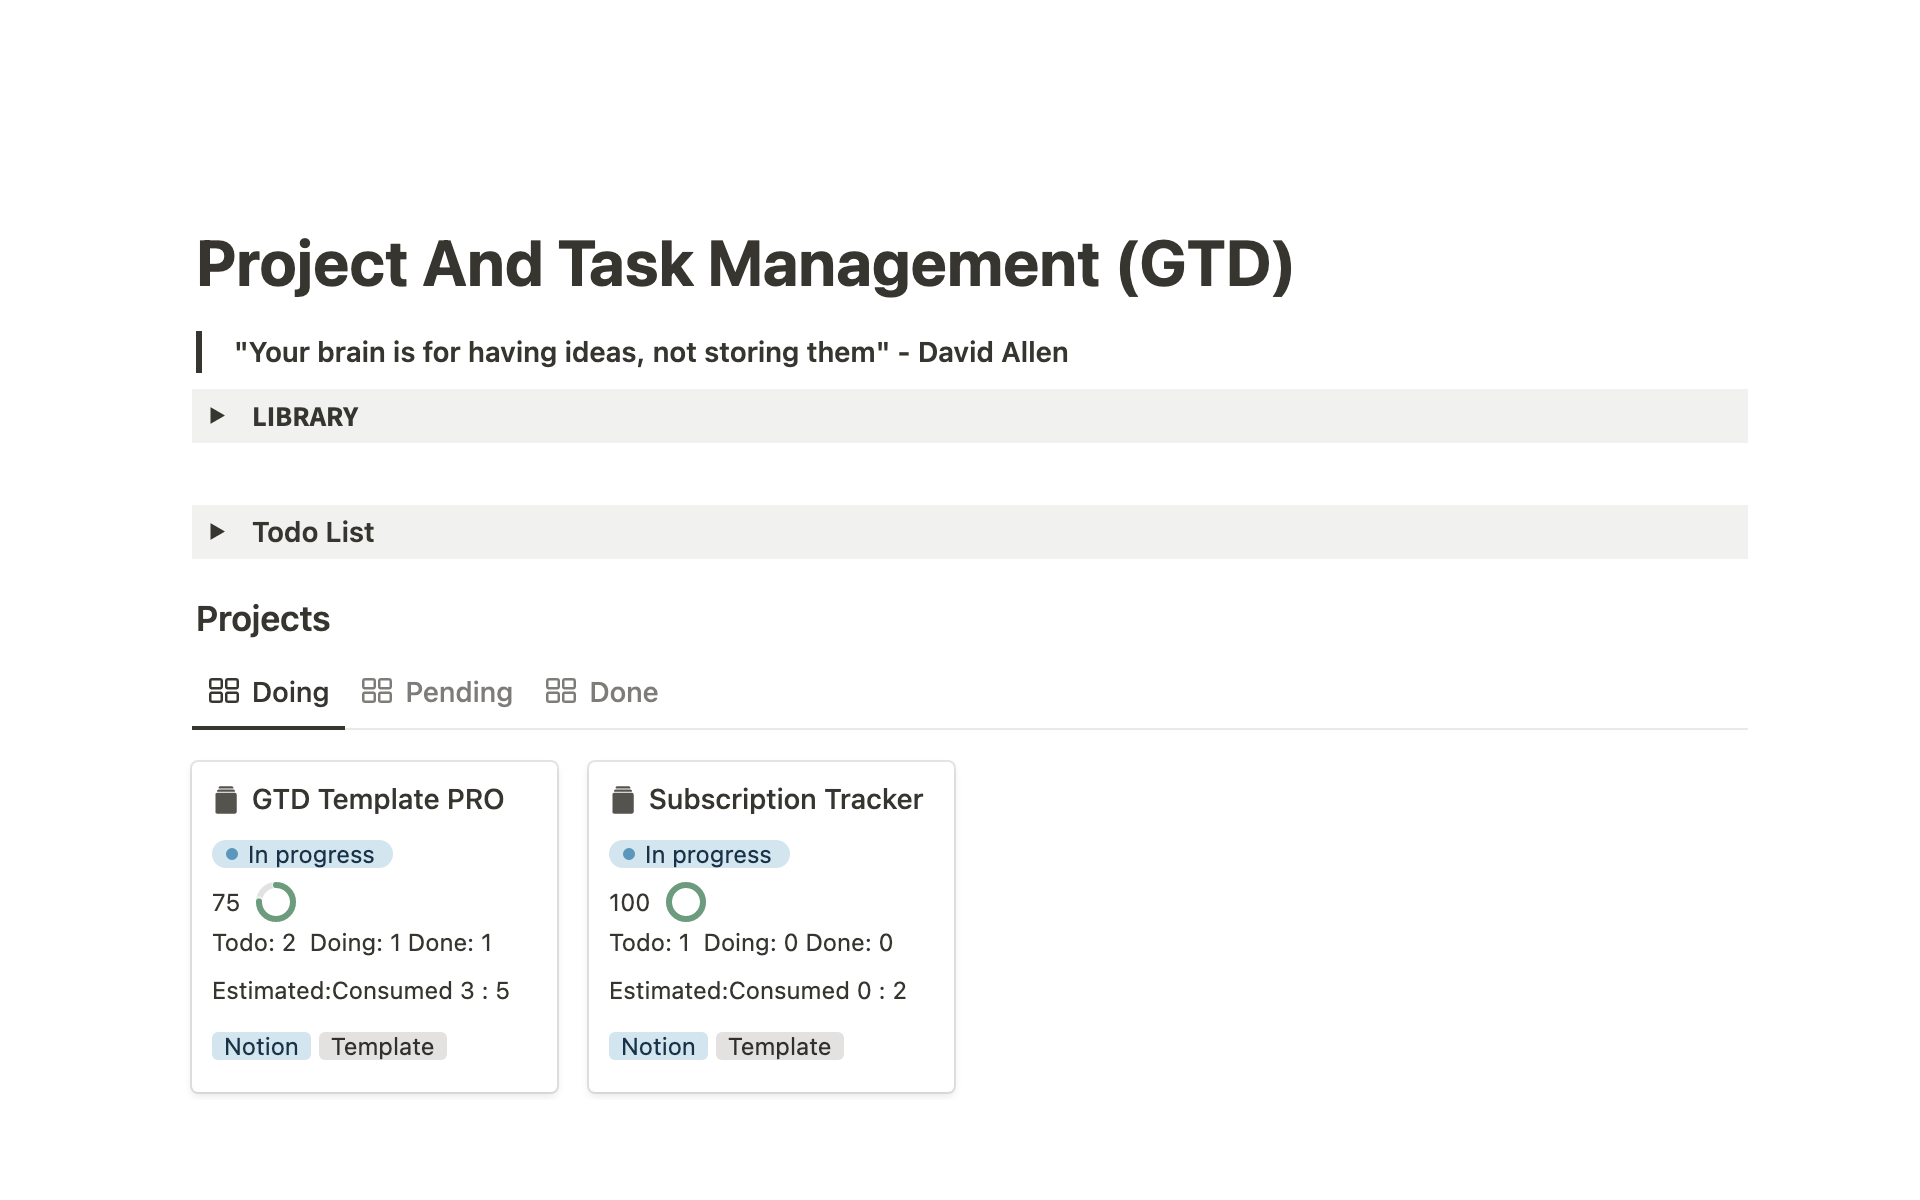 Vista previa de una plantilla para Project And Task Management (GTD)